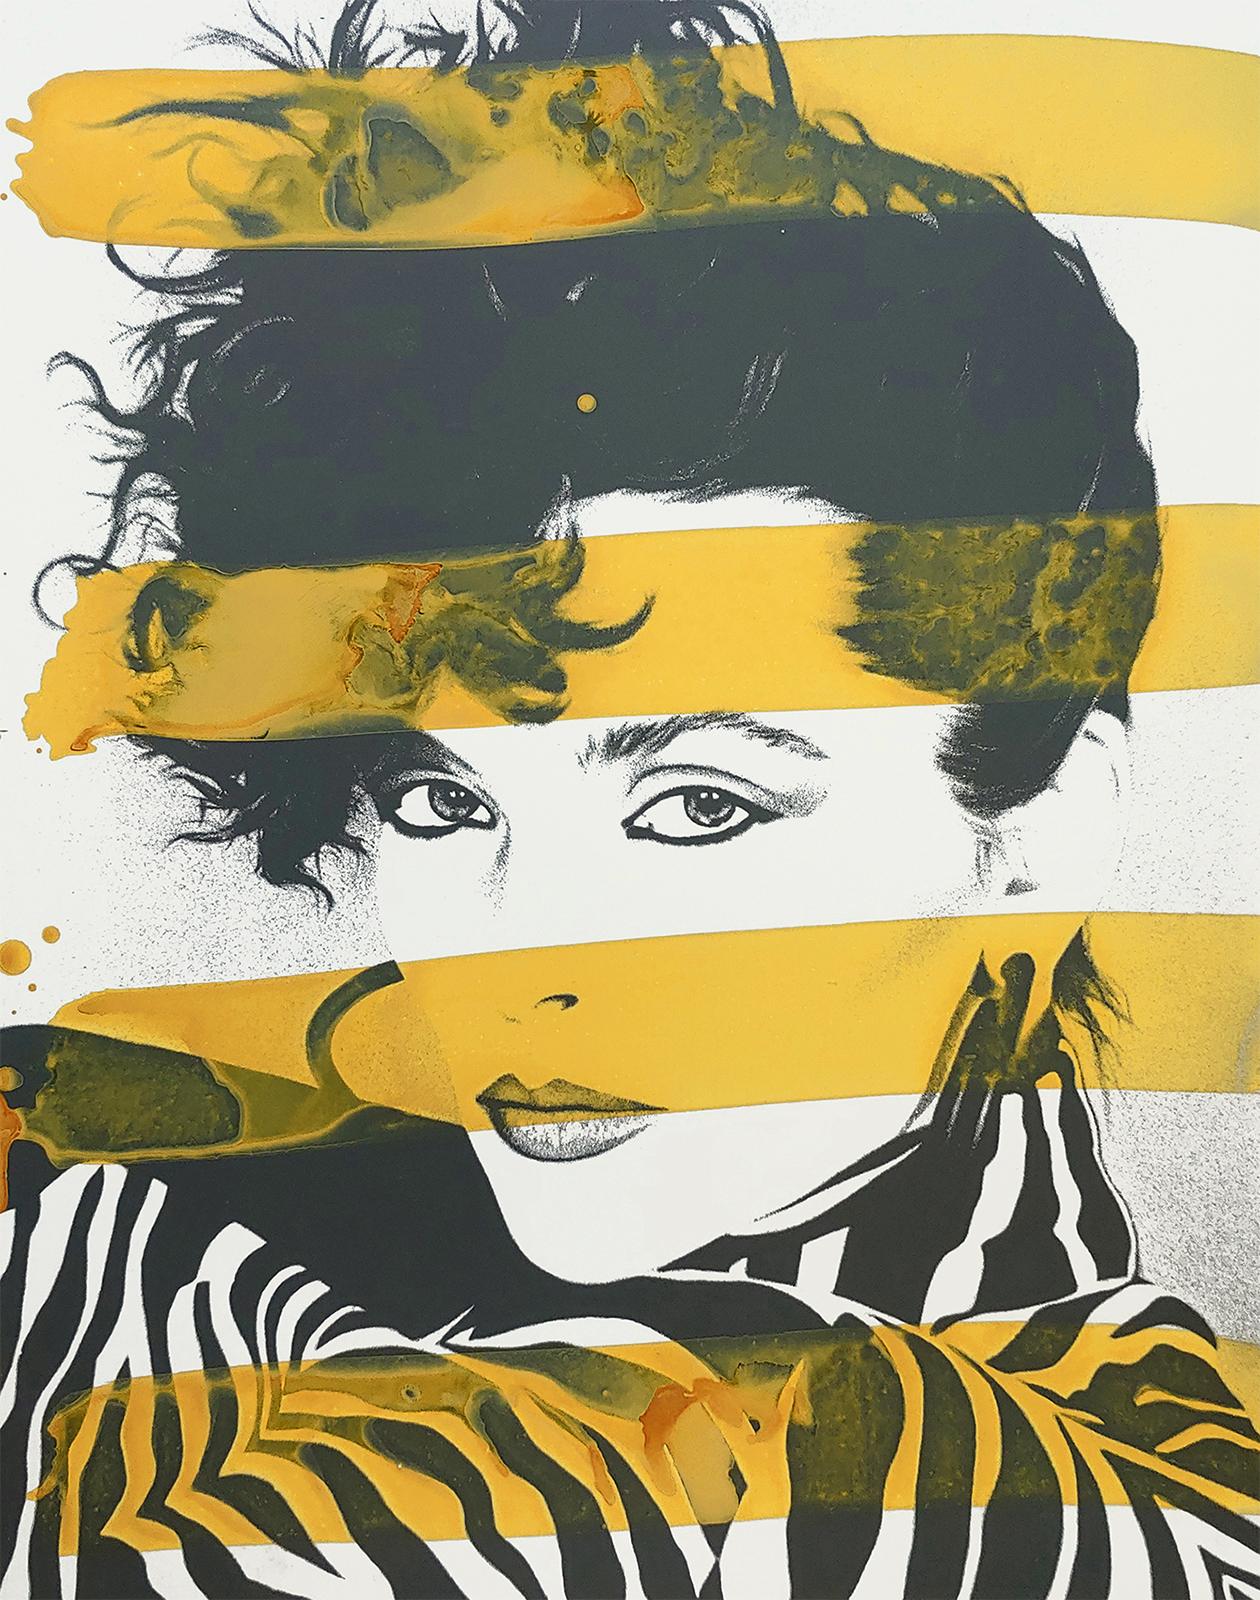 Modell aus Zebra mit gelben Streifen, New Yorker Modell  Acryl und Siebdruck auf Karton (Zeitgenössisch), Mixed Media Art, von Ceravolo